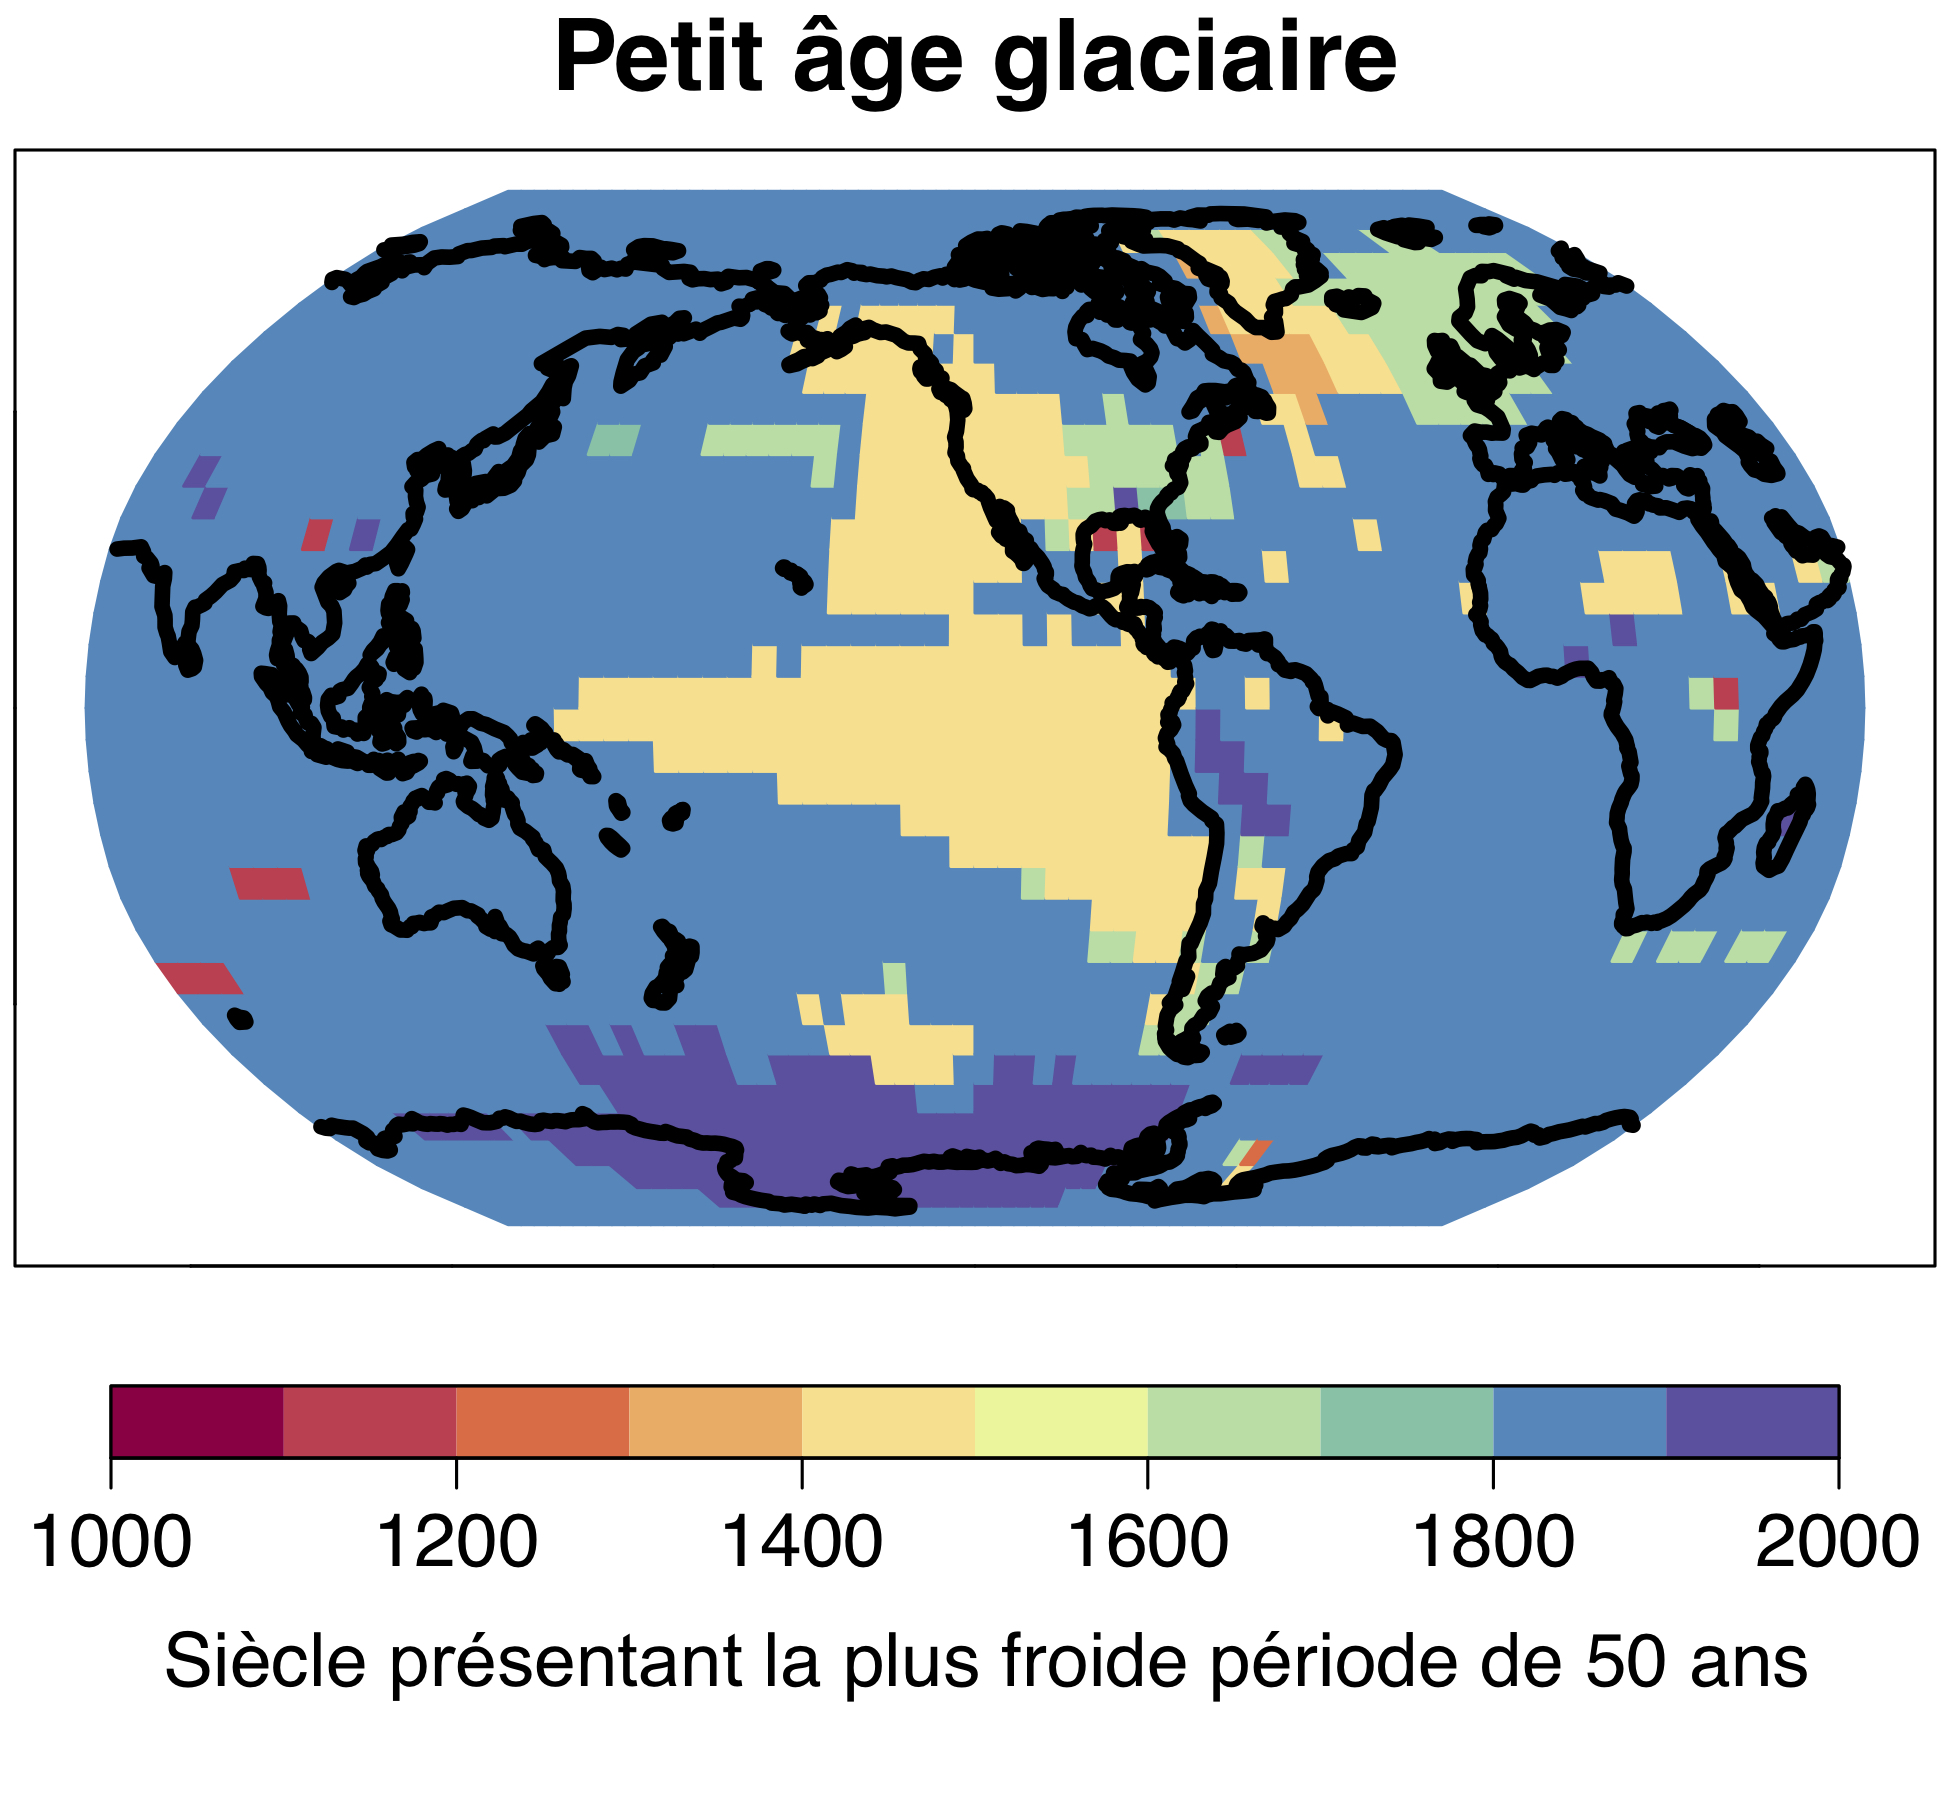 L’ère glaciaire devenue célèbre en Europe et en Amérique du Nord comme le «petit âge glaciaire» n’a pas été un phénomène mondial ; la période la plus froide de 50 ans du dernier millénaire a eu lieu de manière locale et à des moments différents. © Université de Berne